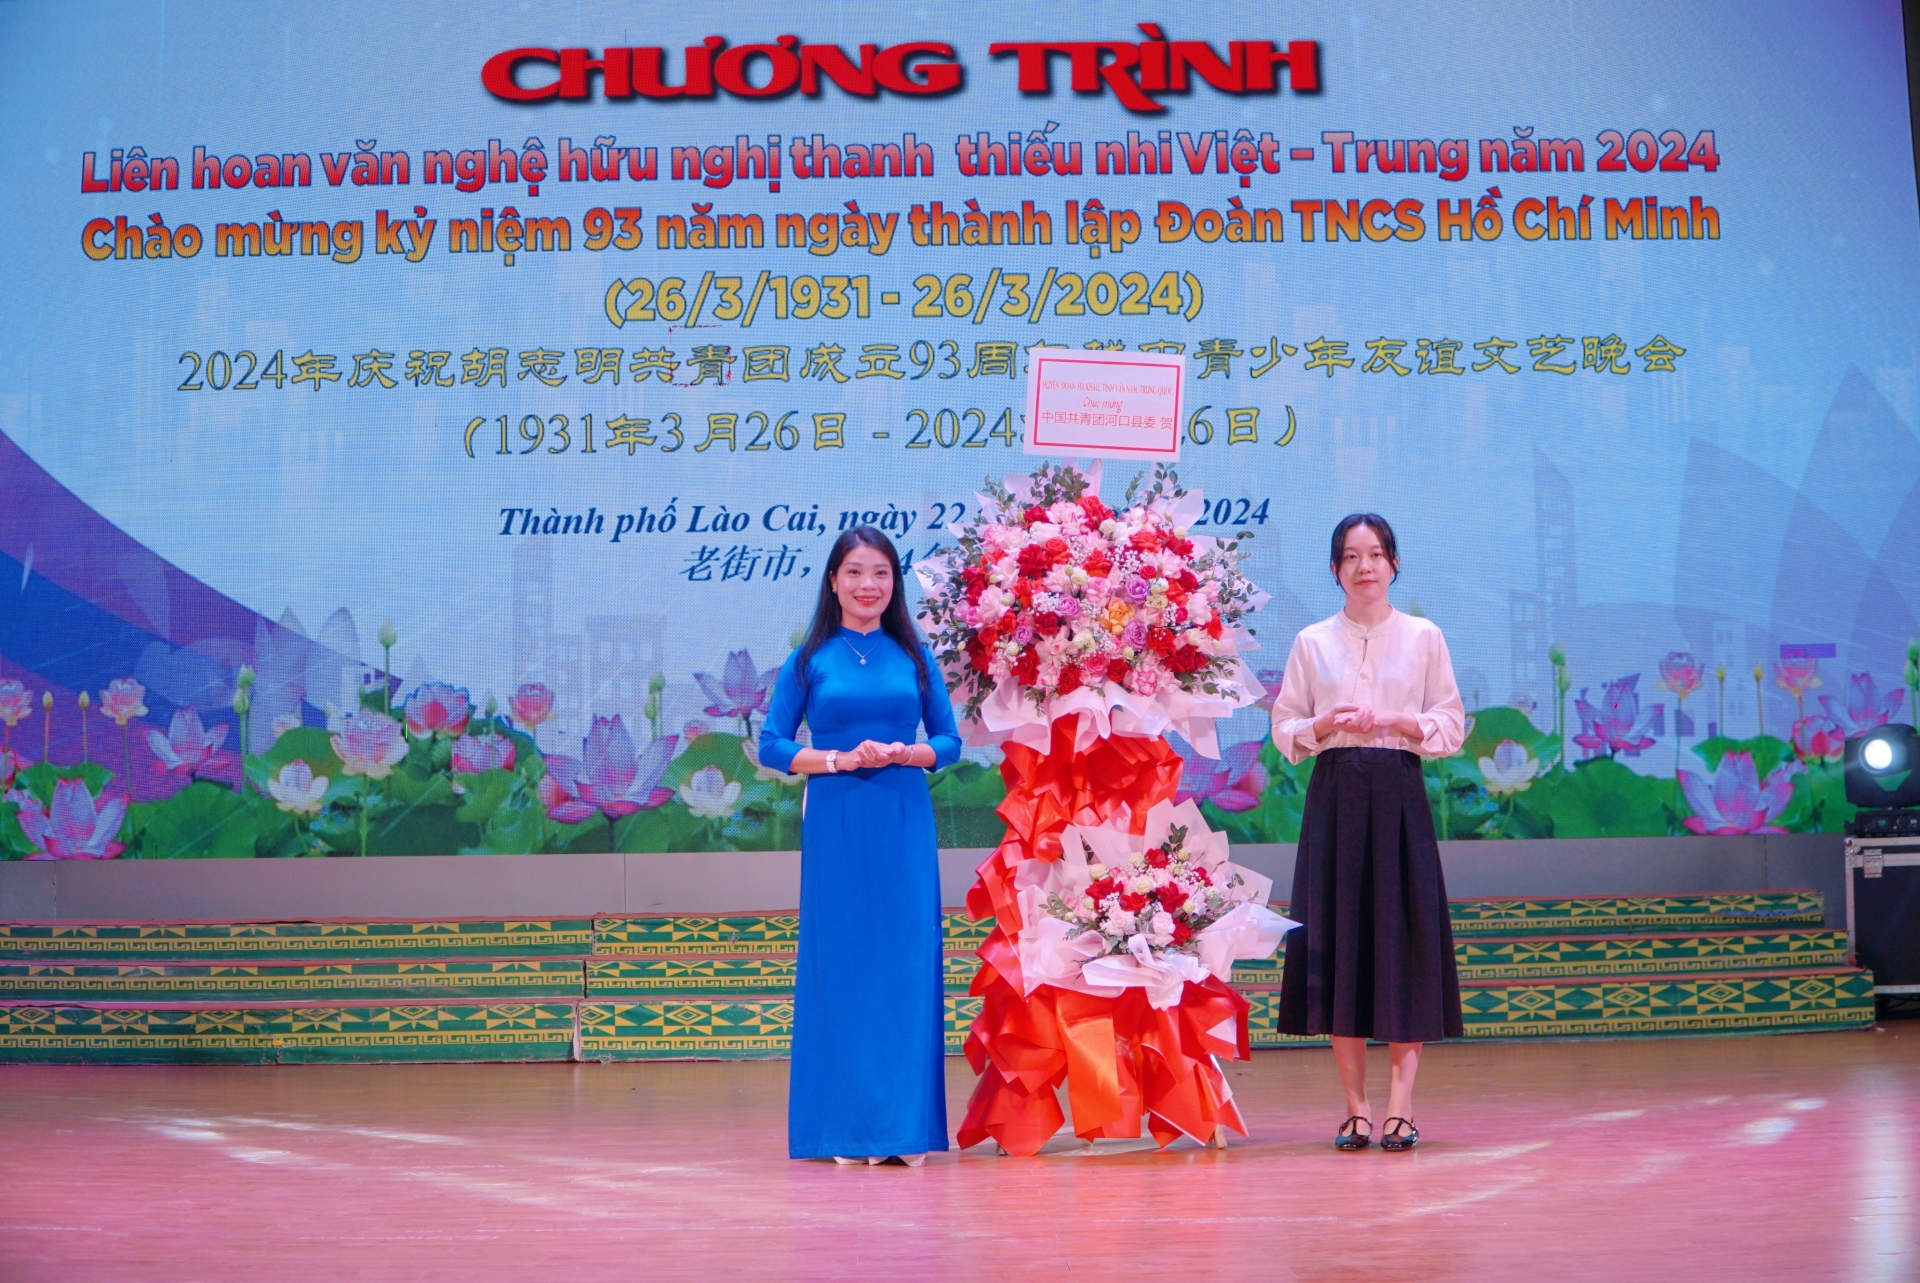 值胡志明共青团成立93周年之际，中国河口瑶族自治县共青团向越南老街市表示祝贺。